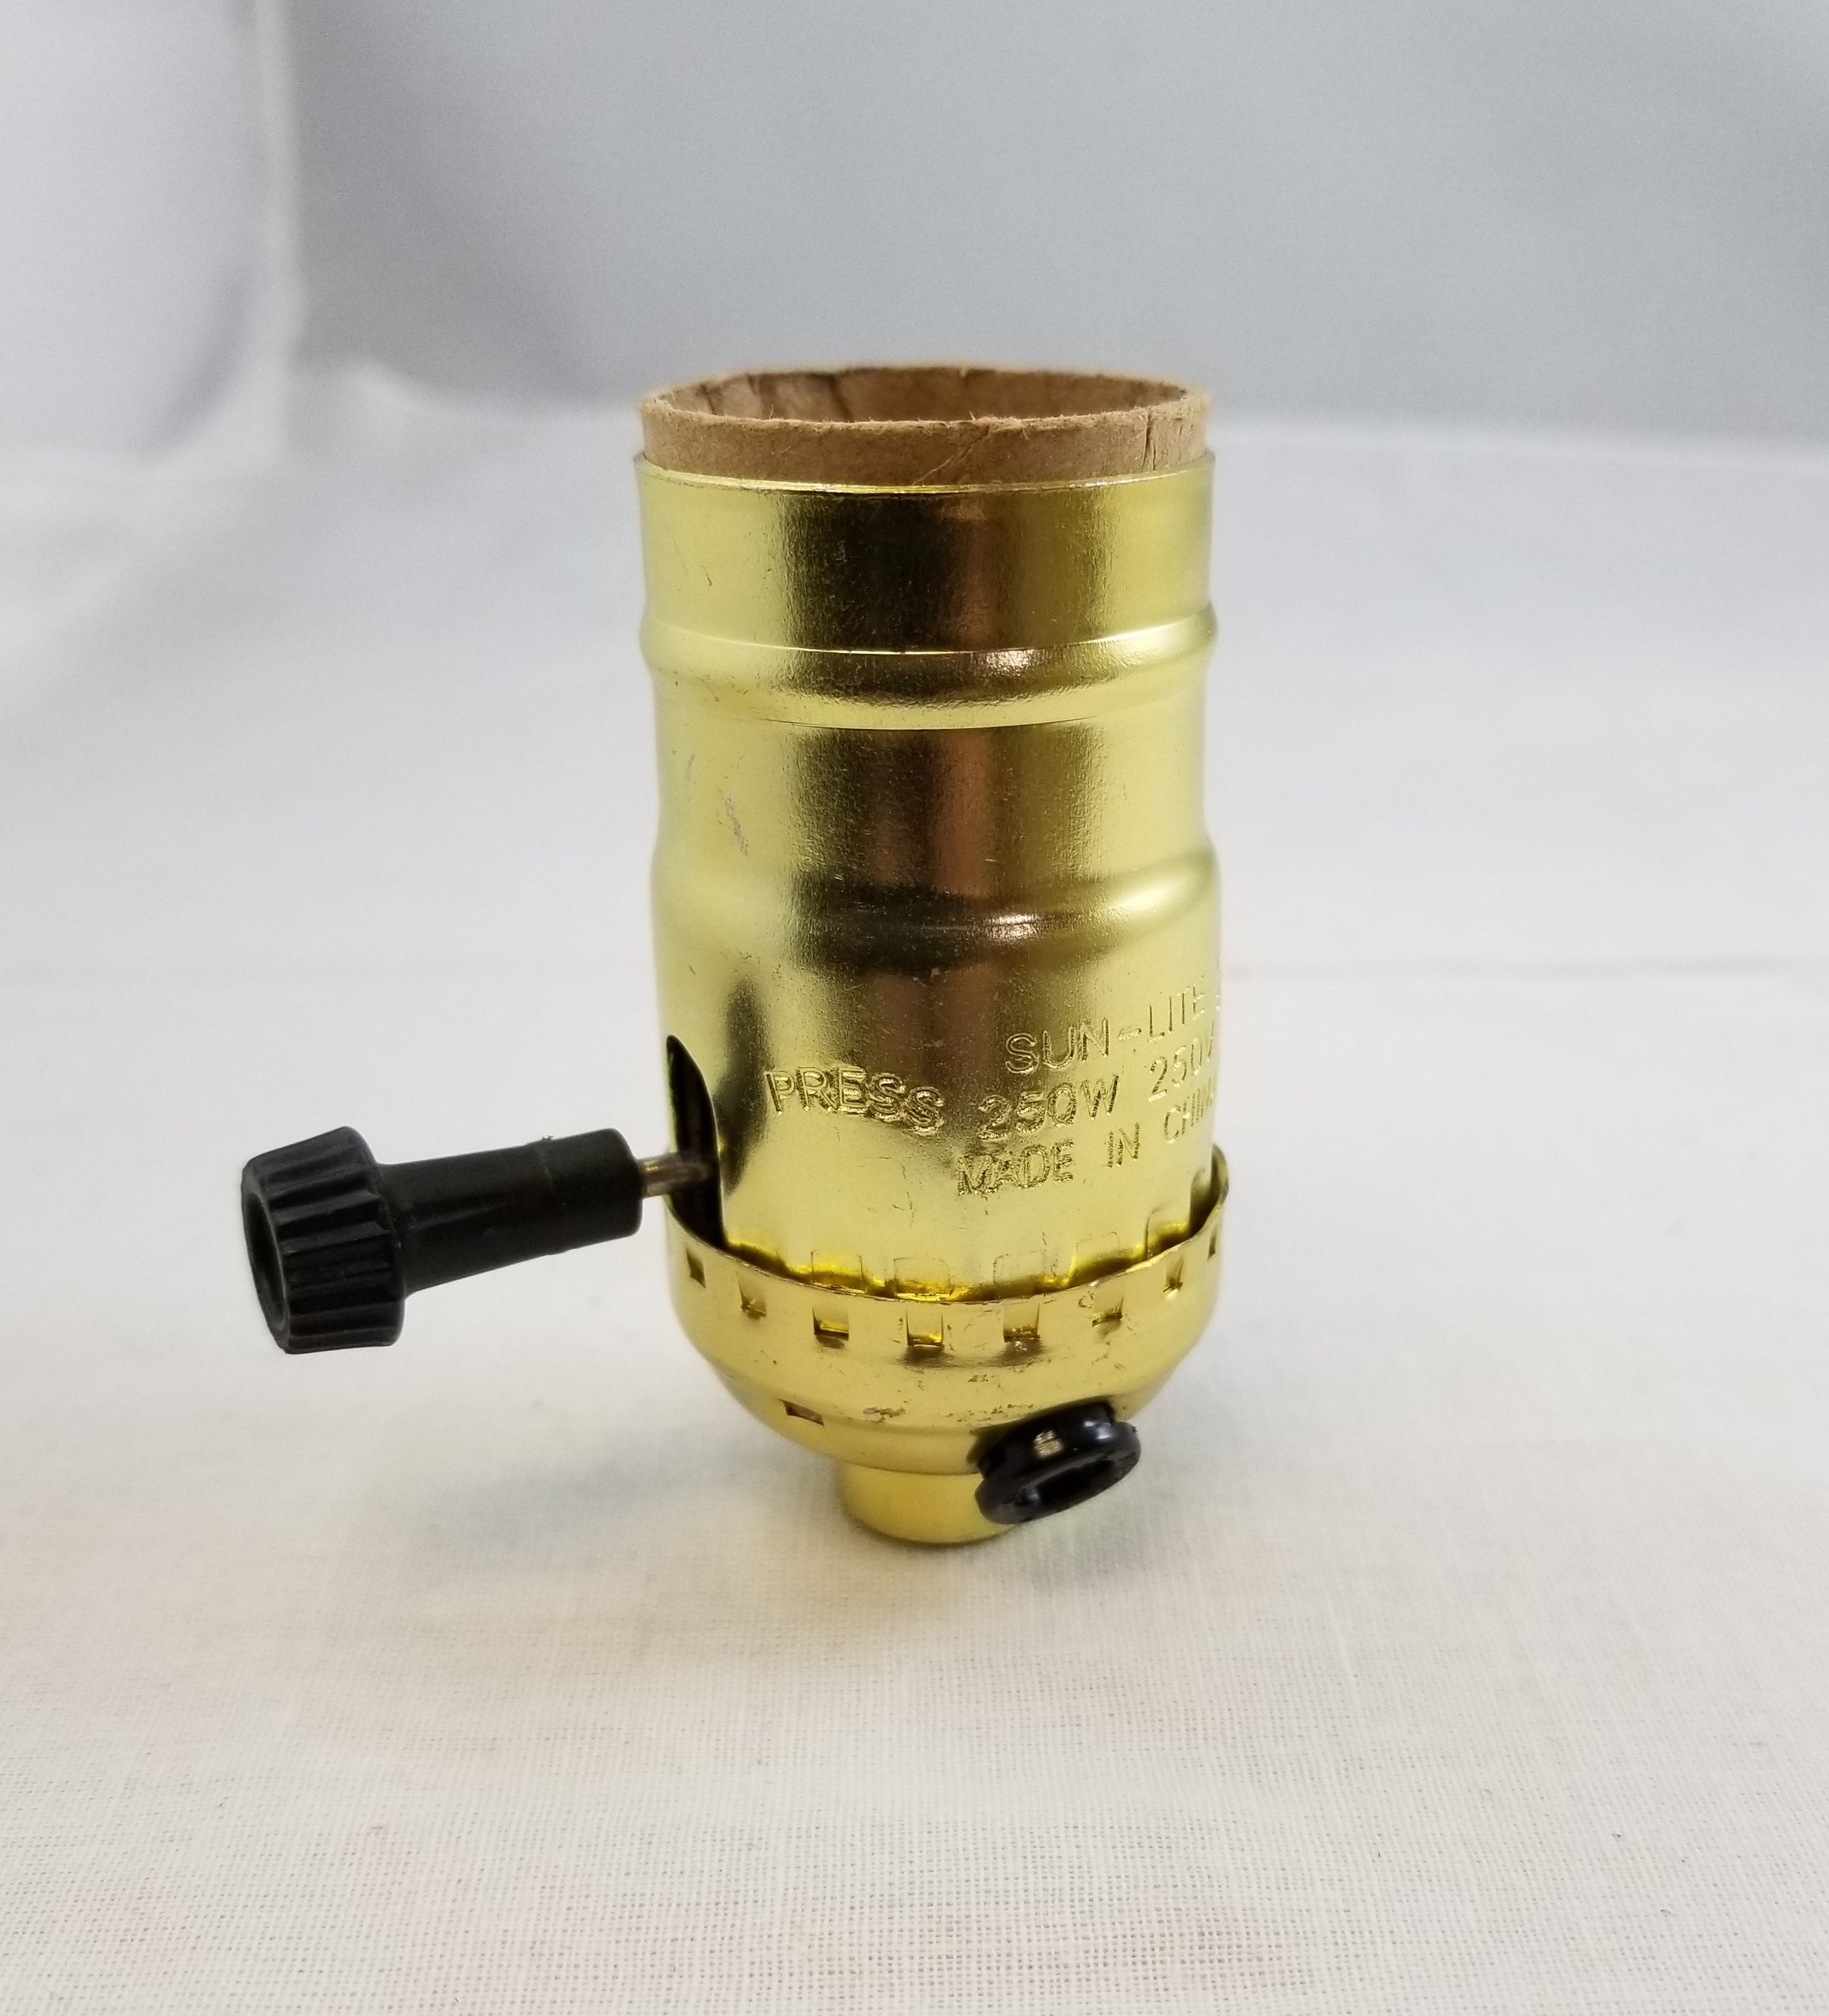 Brass Gilt Turn Knob Socket w/ side outlet cap